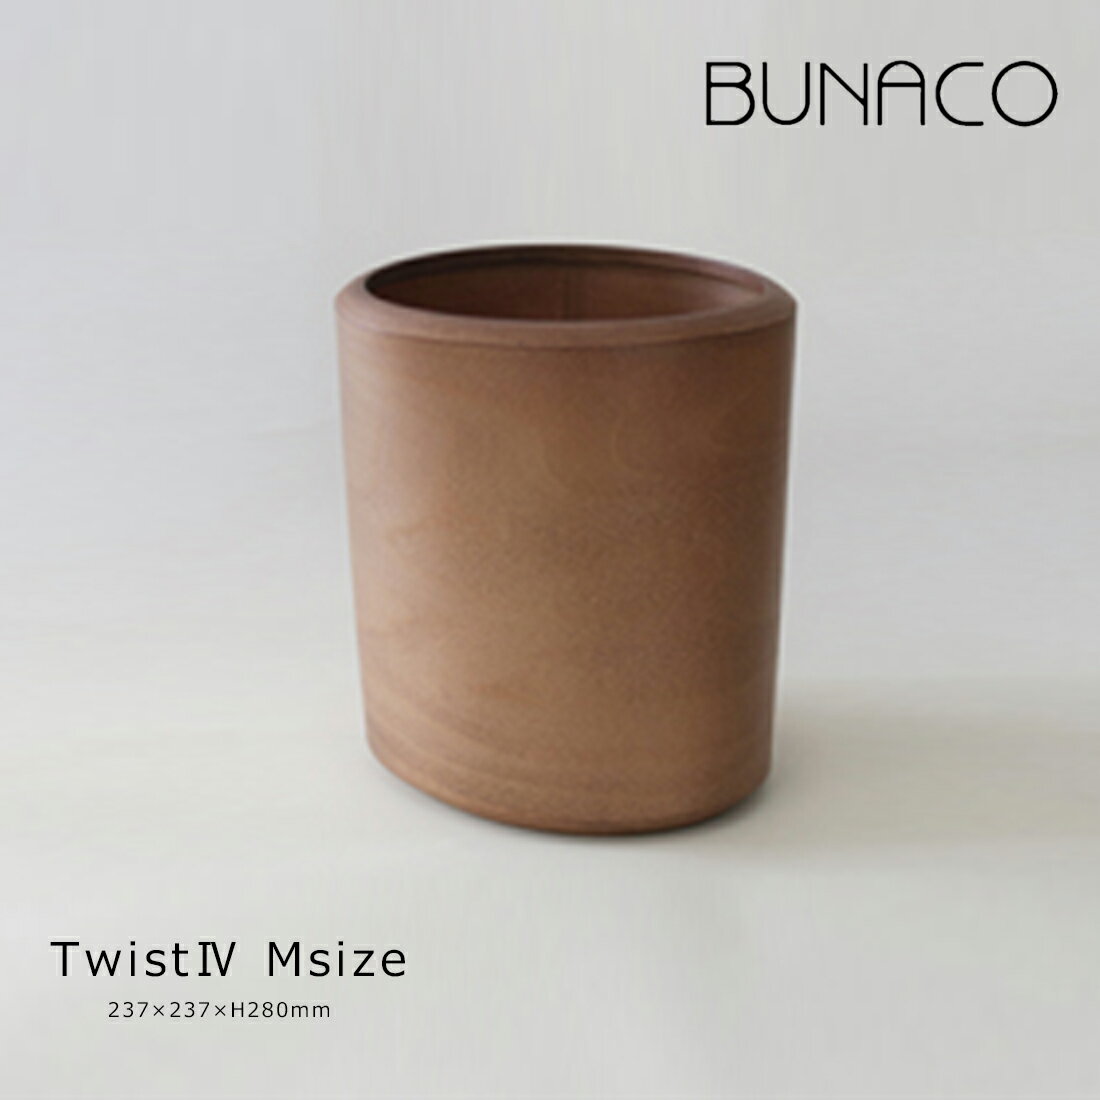 BUNACO ブナコ Dust Box Twist4 Size M ダストボックス ゴミ箱 ツイスト 木工品 日本製